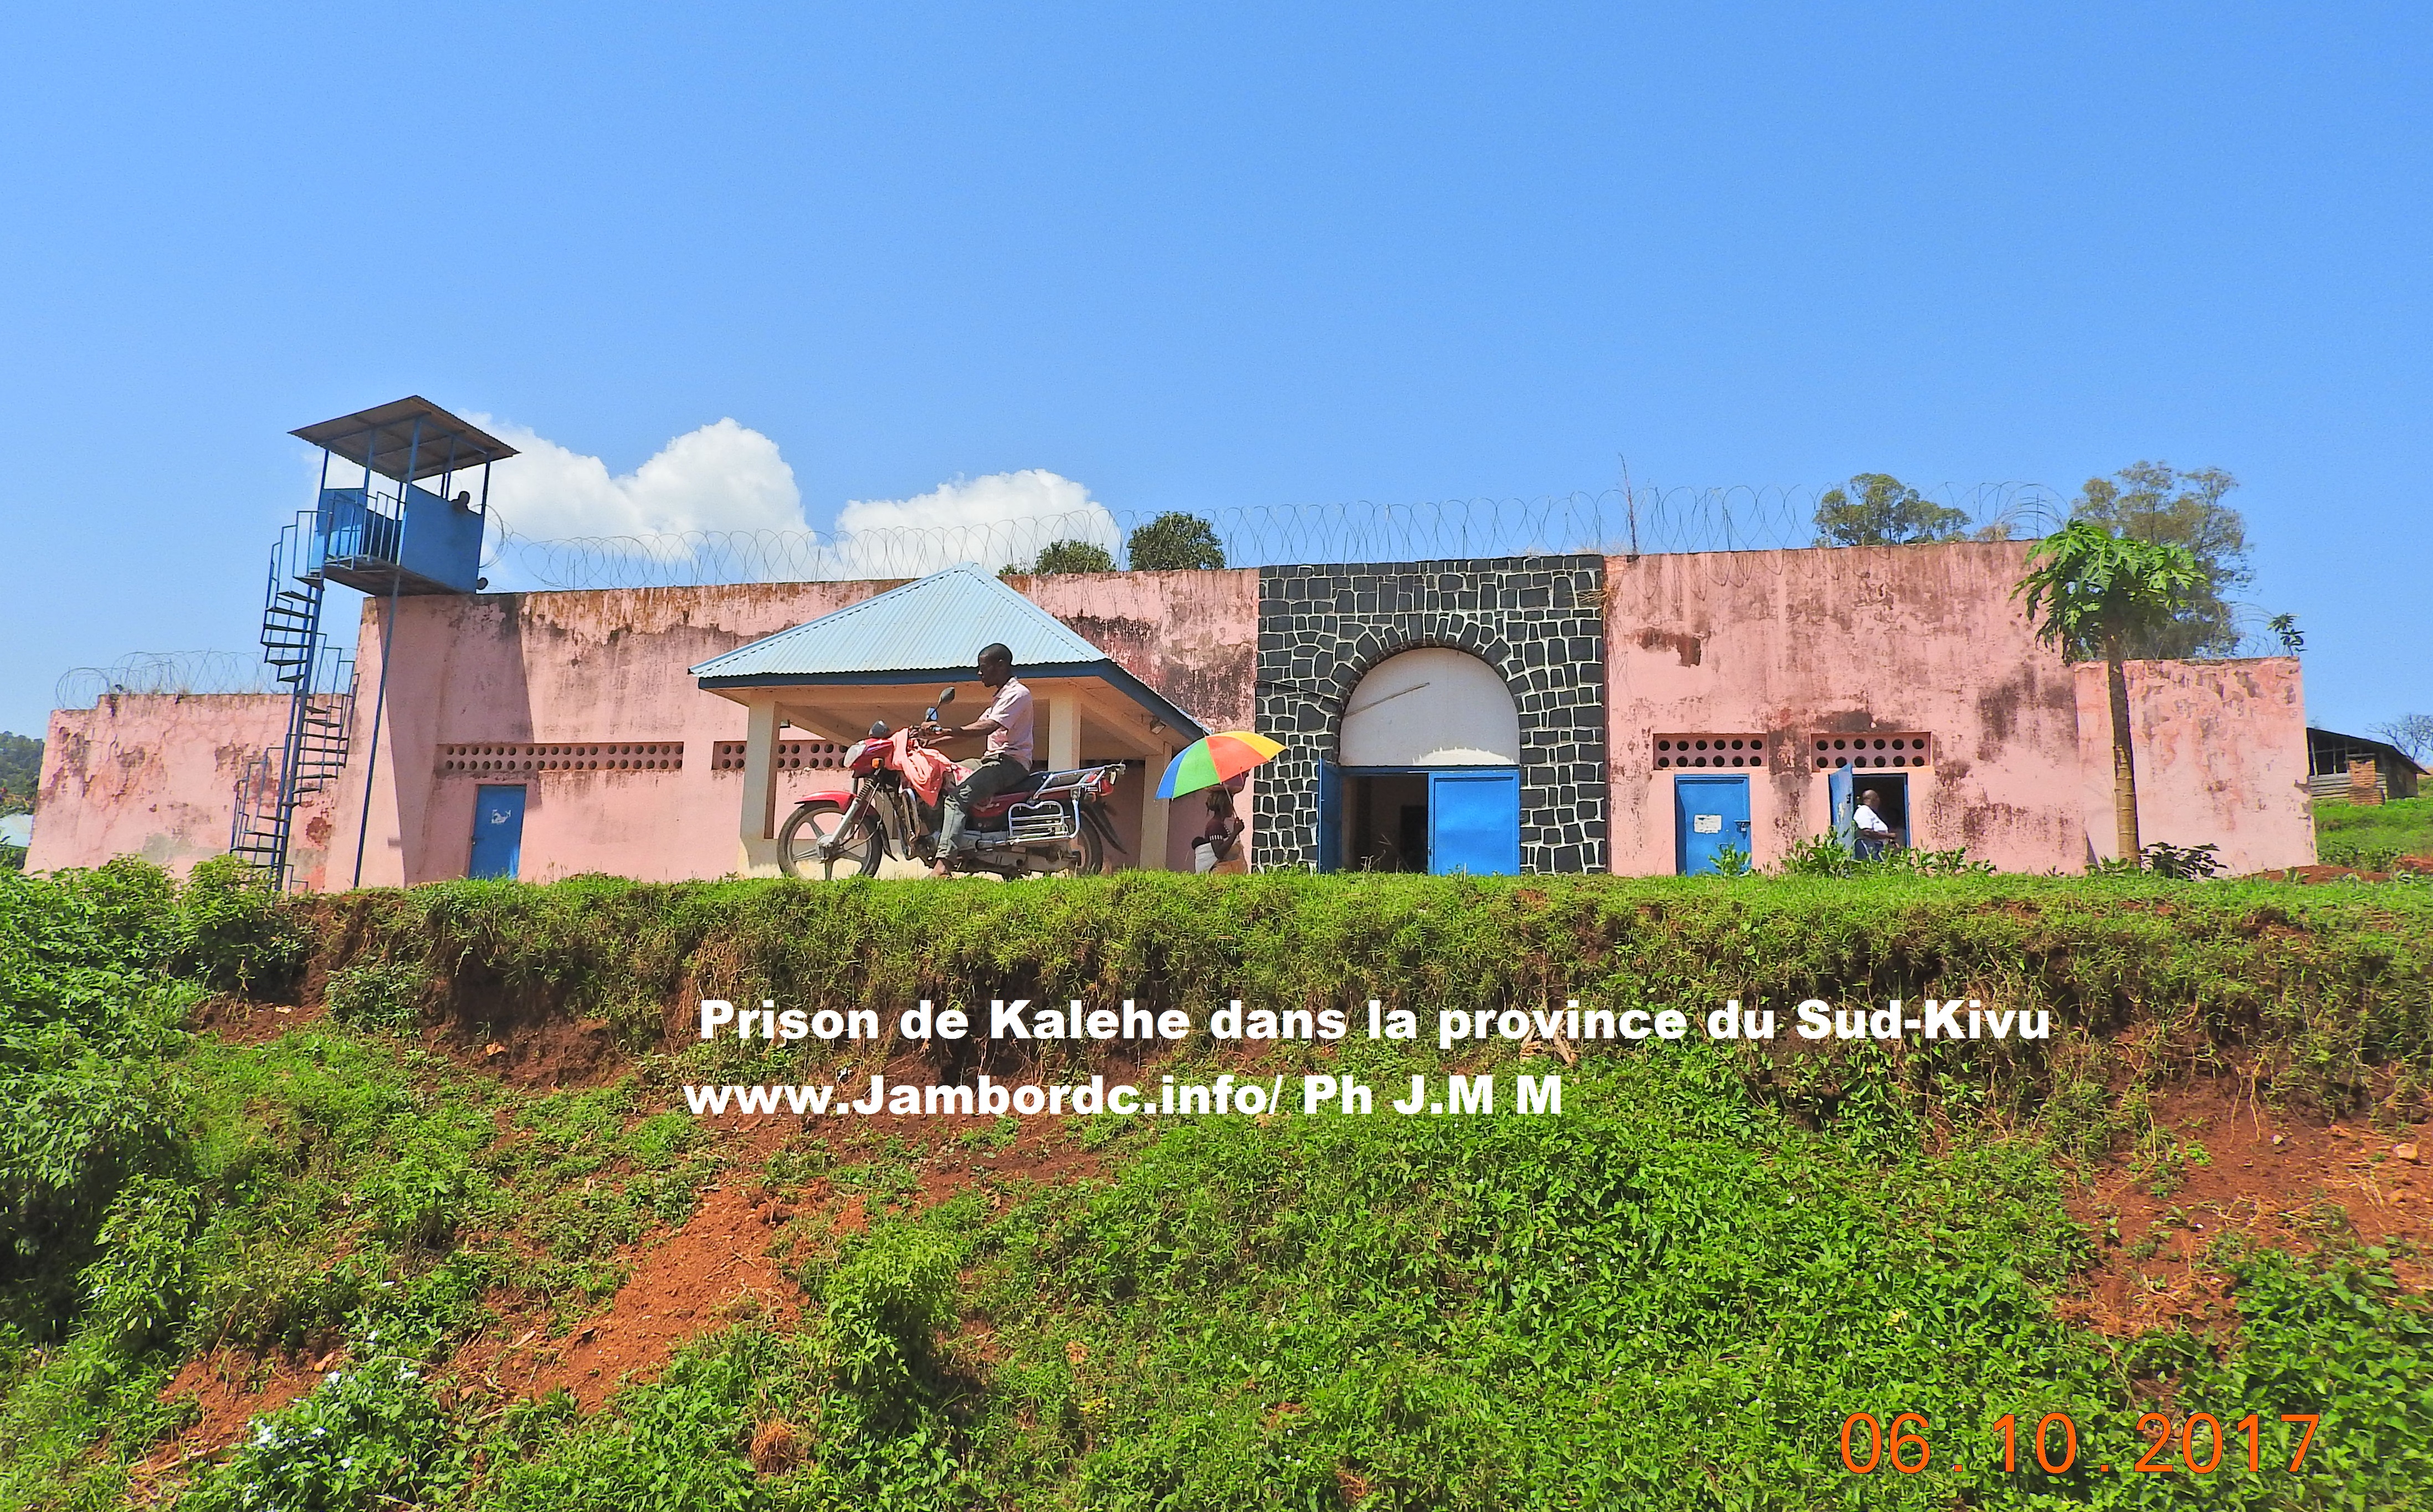 Sud-Kivu : Des cas de violation massive des droits de l’homme inquiètent dans les hauts plateaux de Kalehe